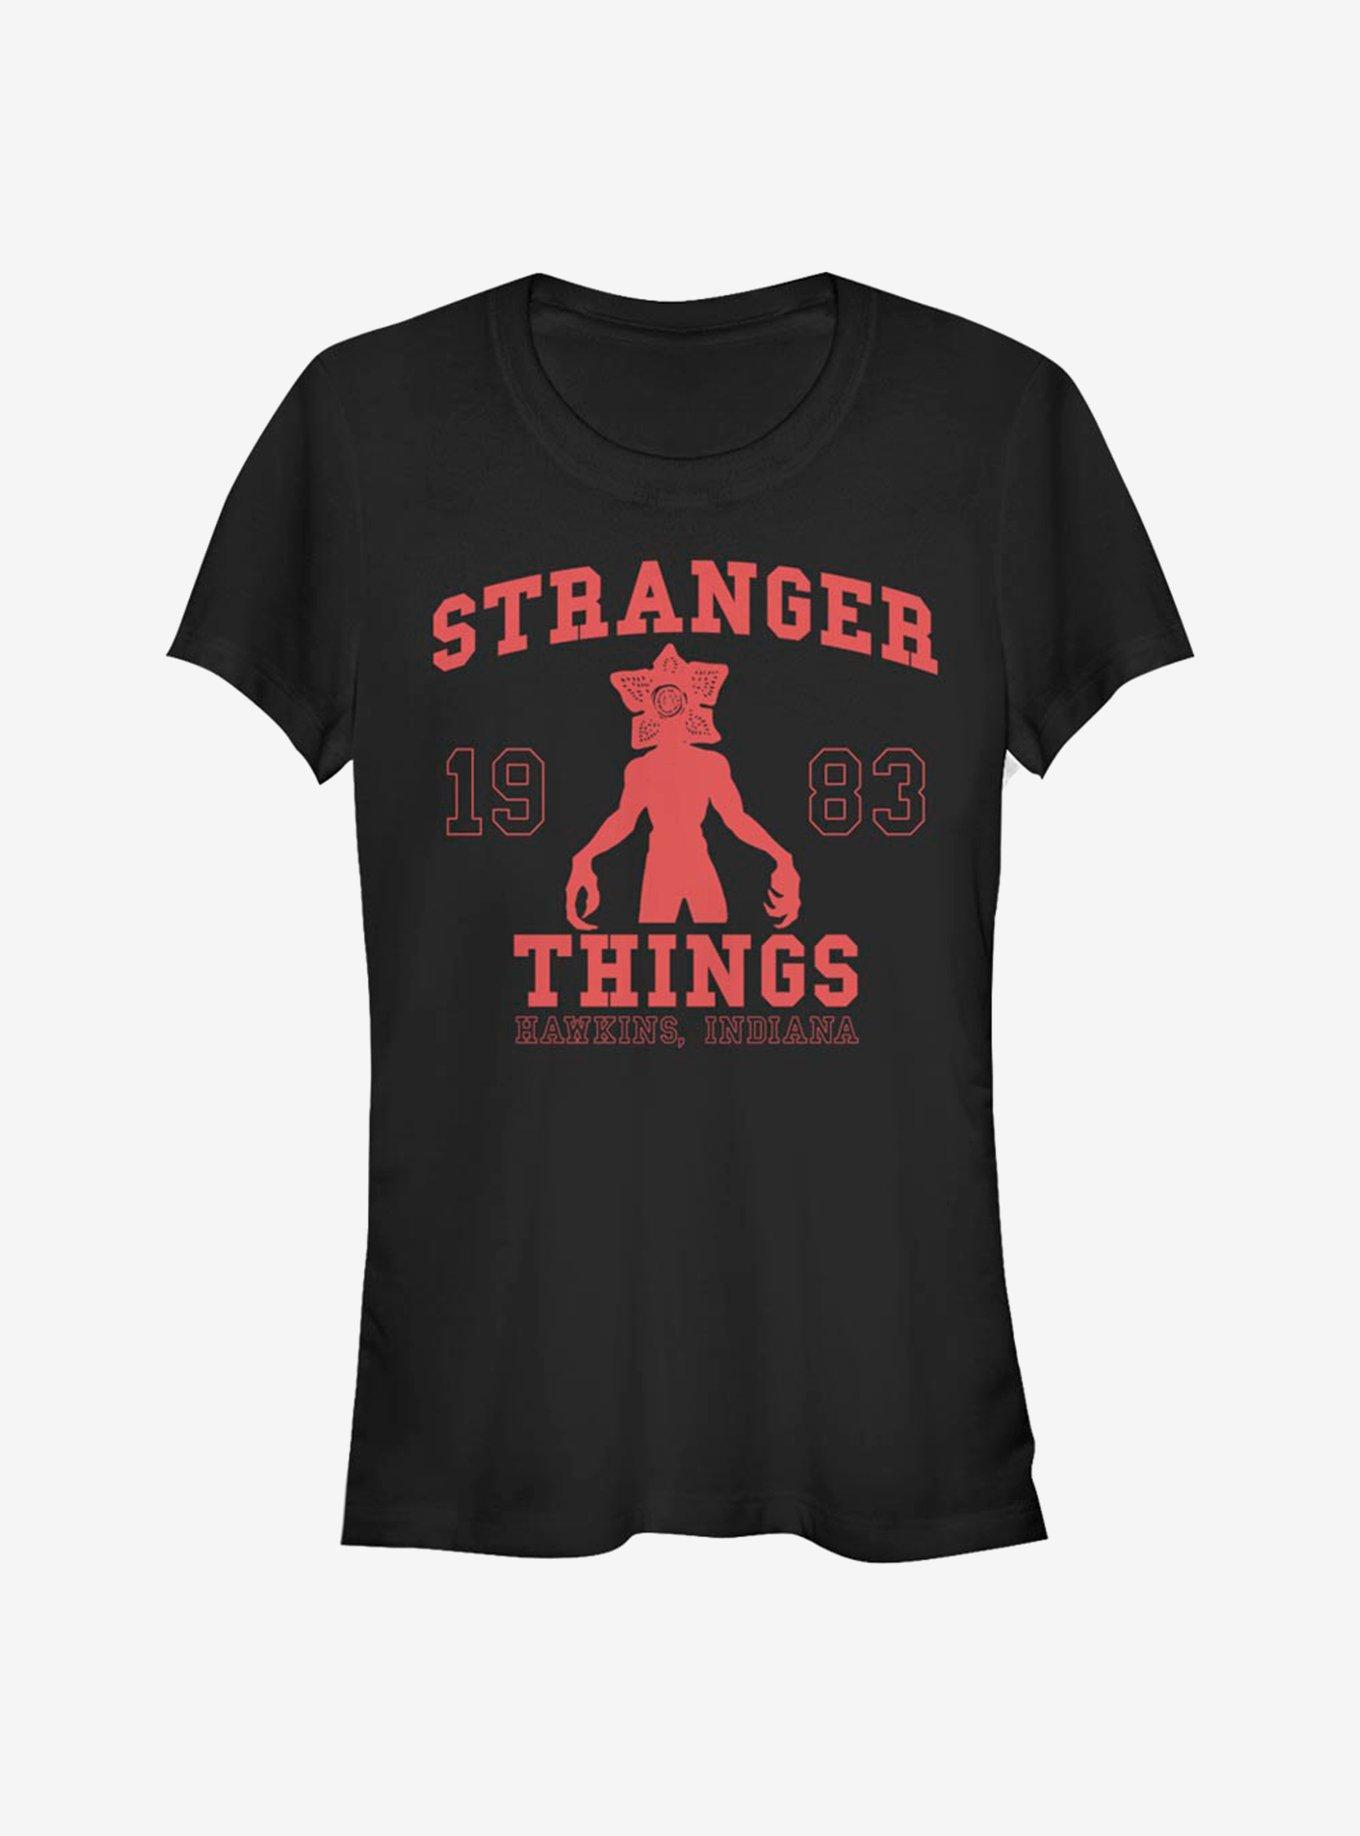 Stranger Things Collegiate Girls T-Shirt